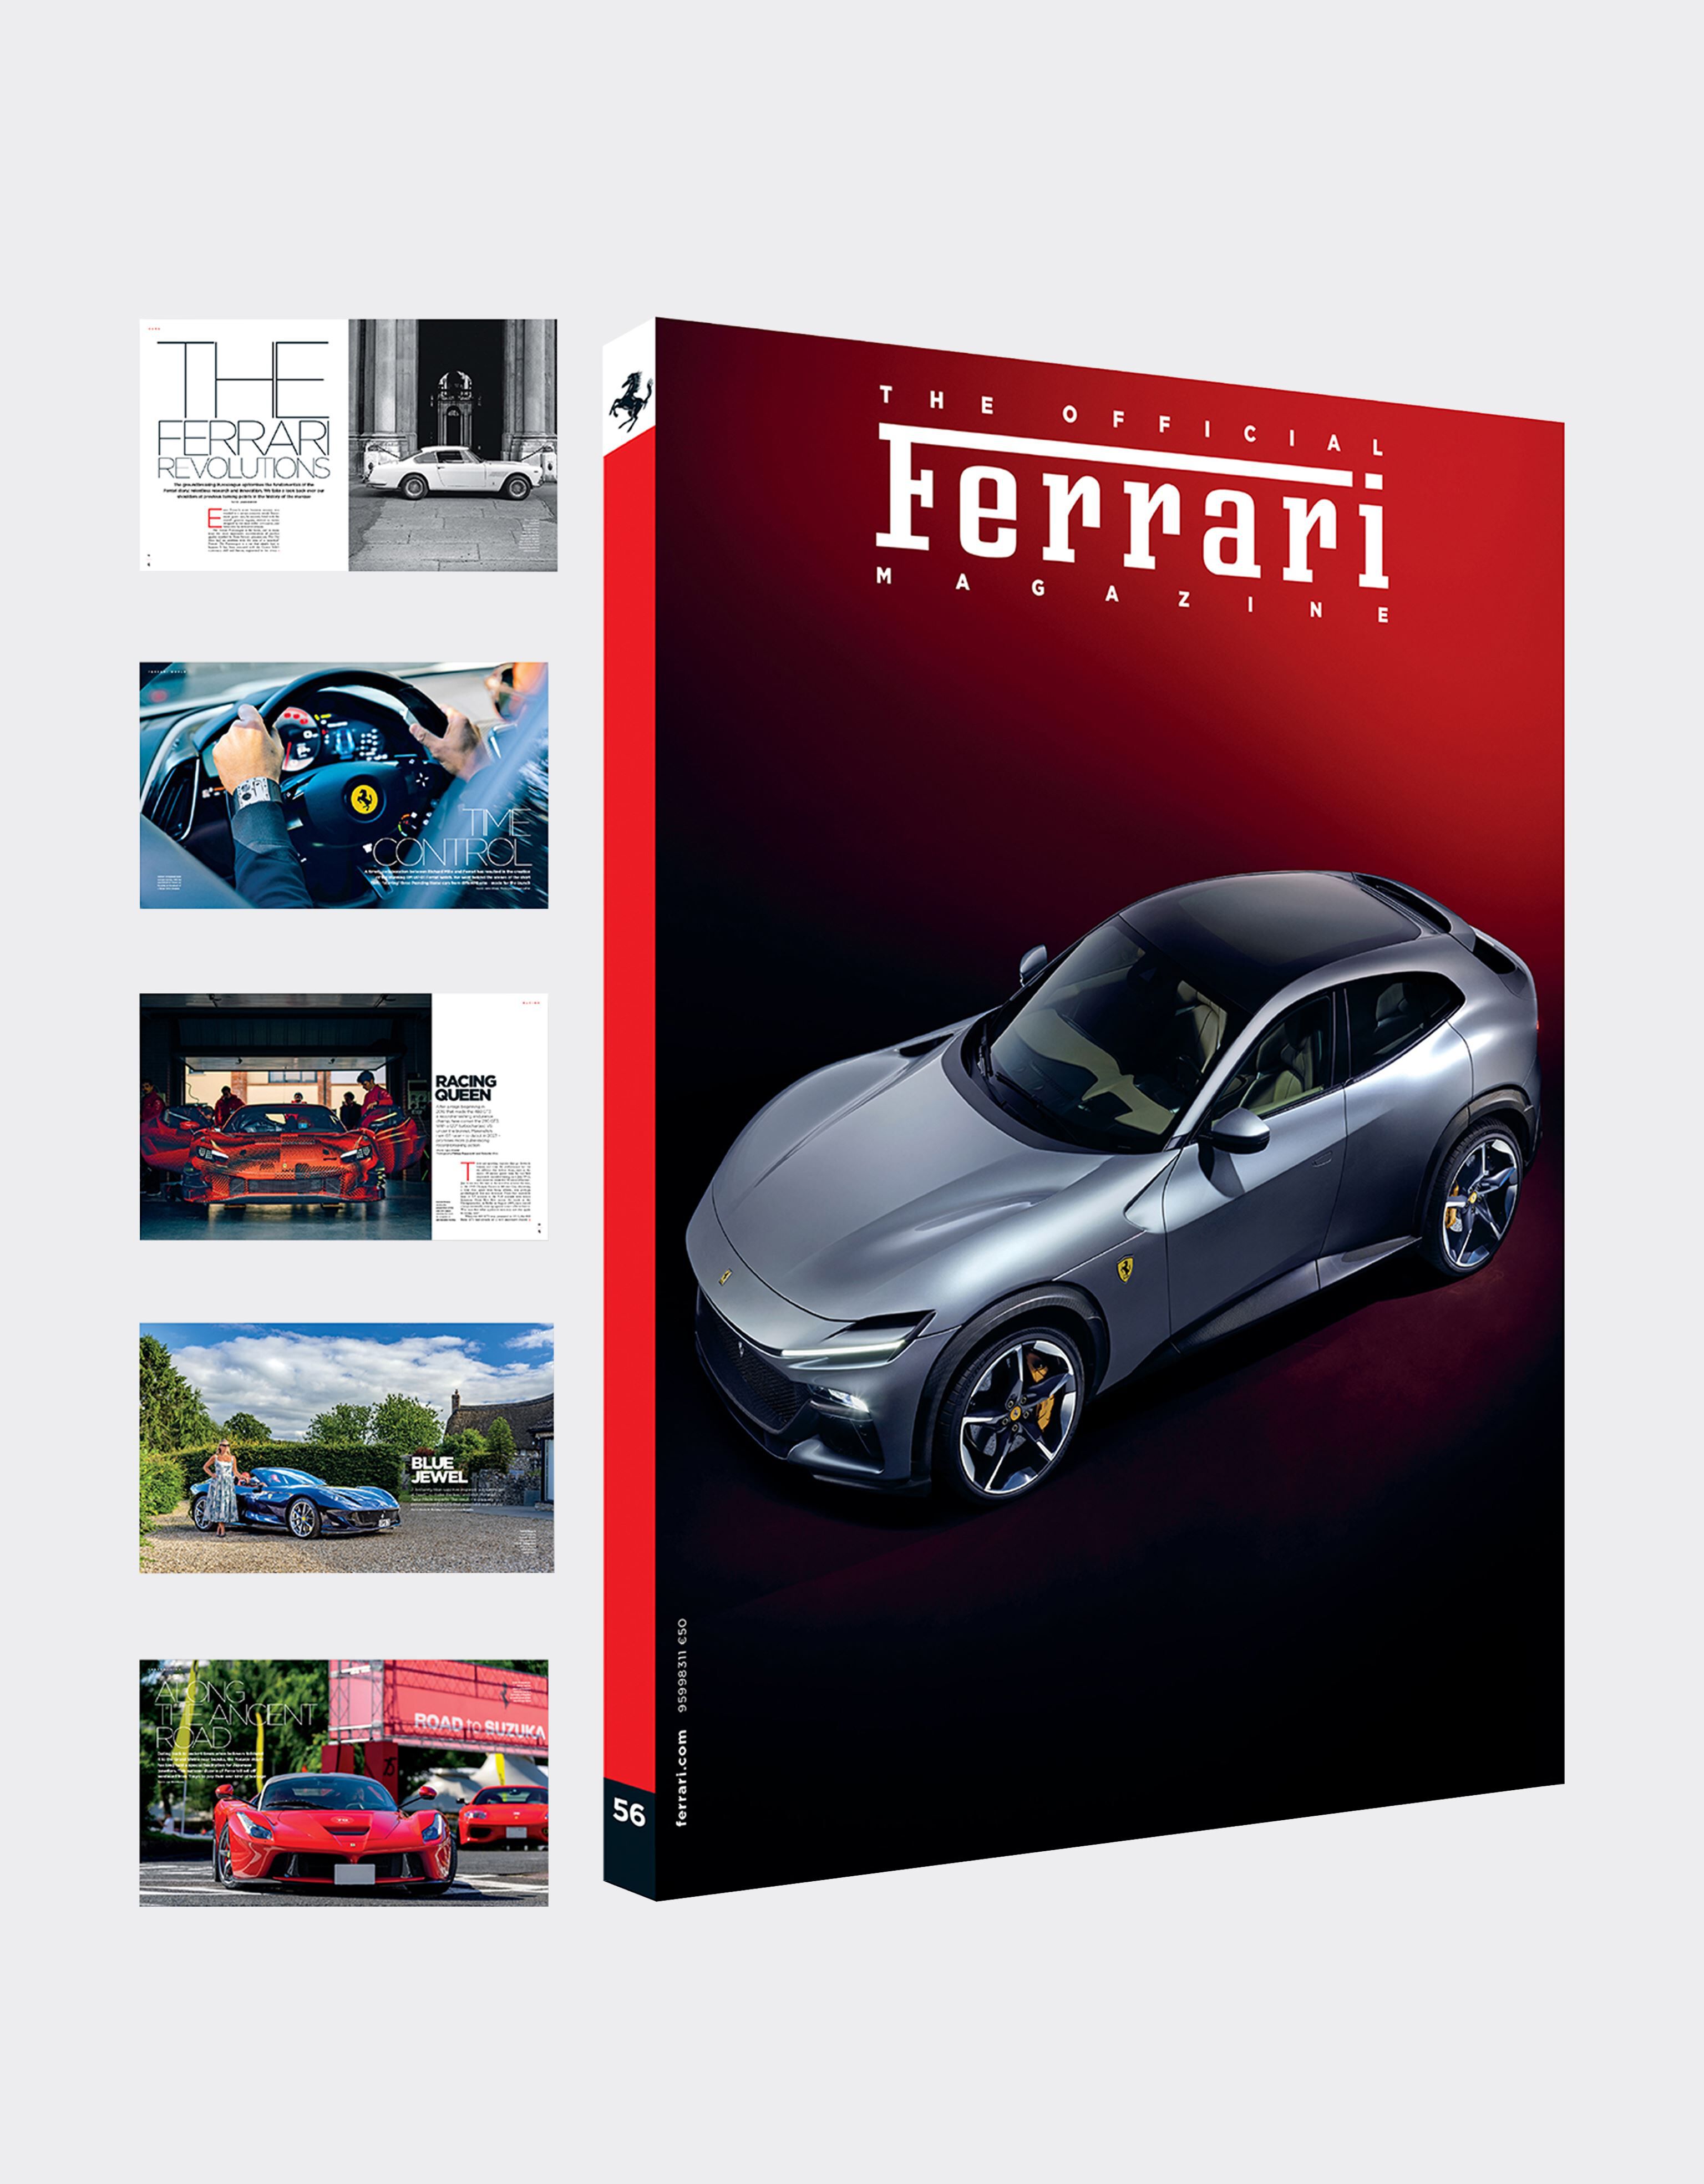 Ferrari The Official Ferrari Magazine numero 56 Nero 47387f